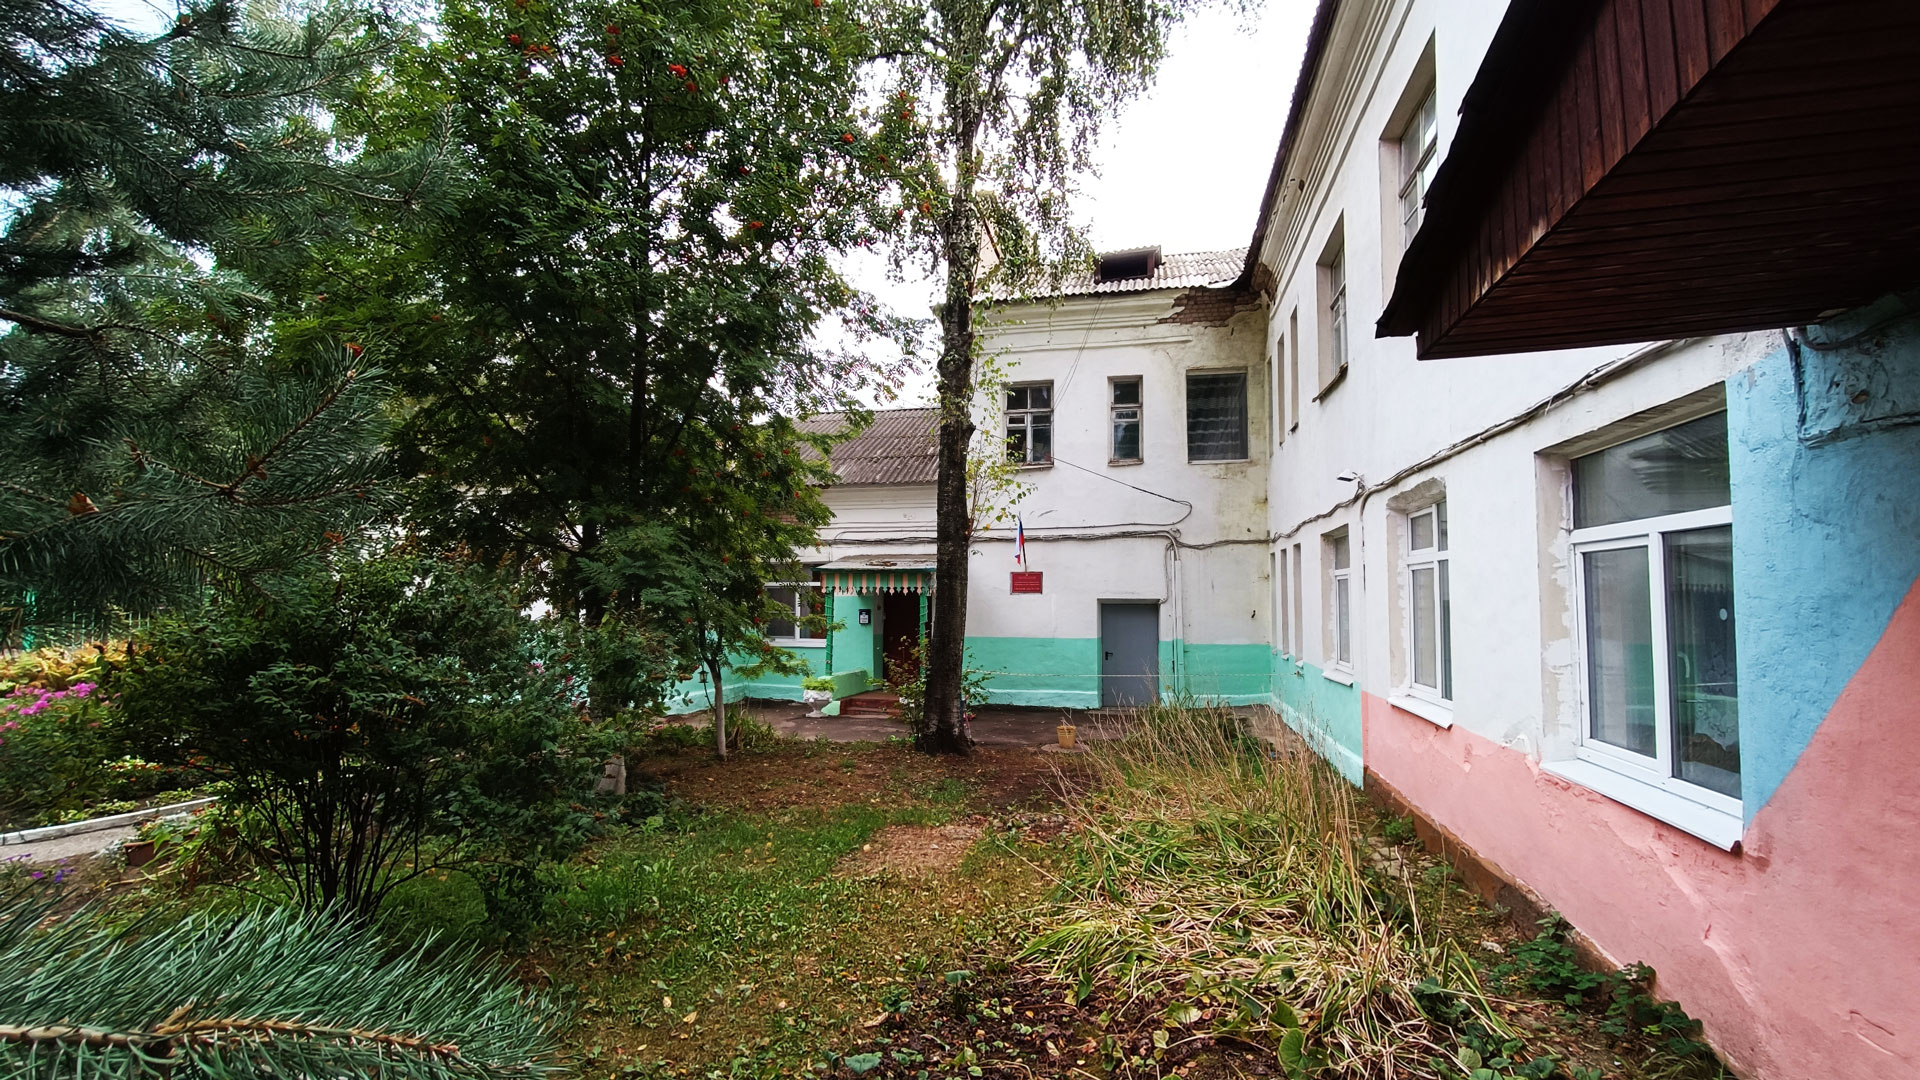 Детский сад 124 Ярославль: общий вид здания (Свободы, 60а).